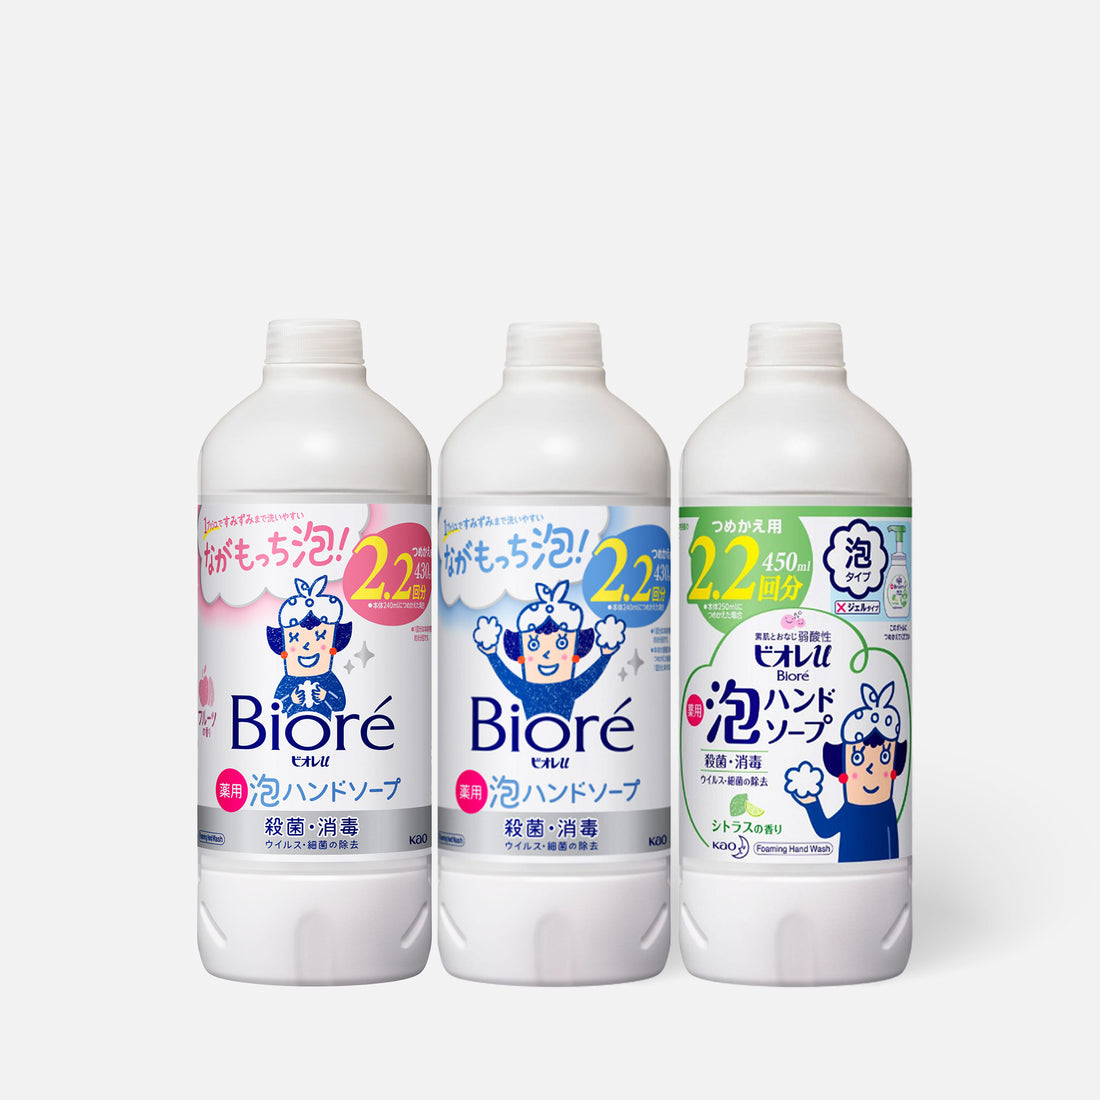 KAO Biore Foaming Hand Soap Refill 430ml